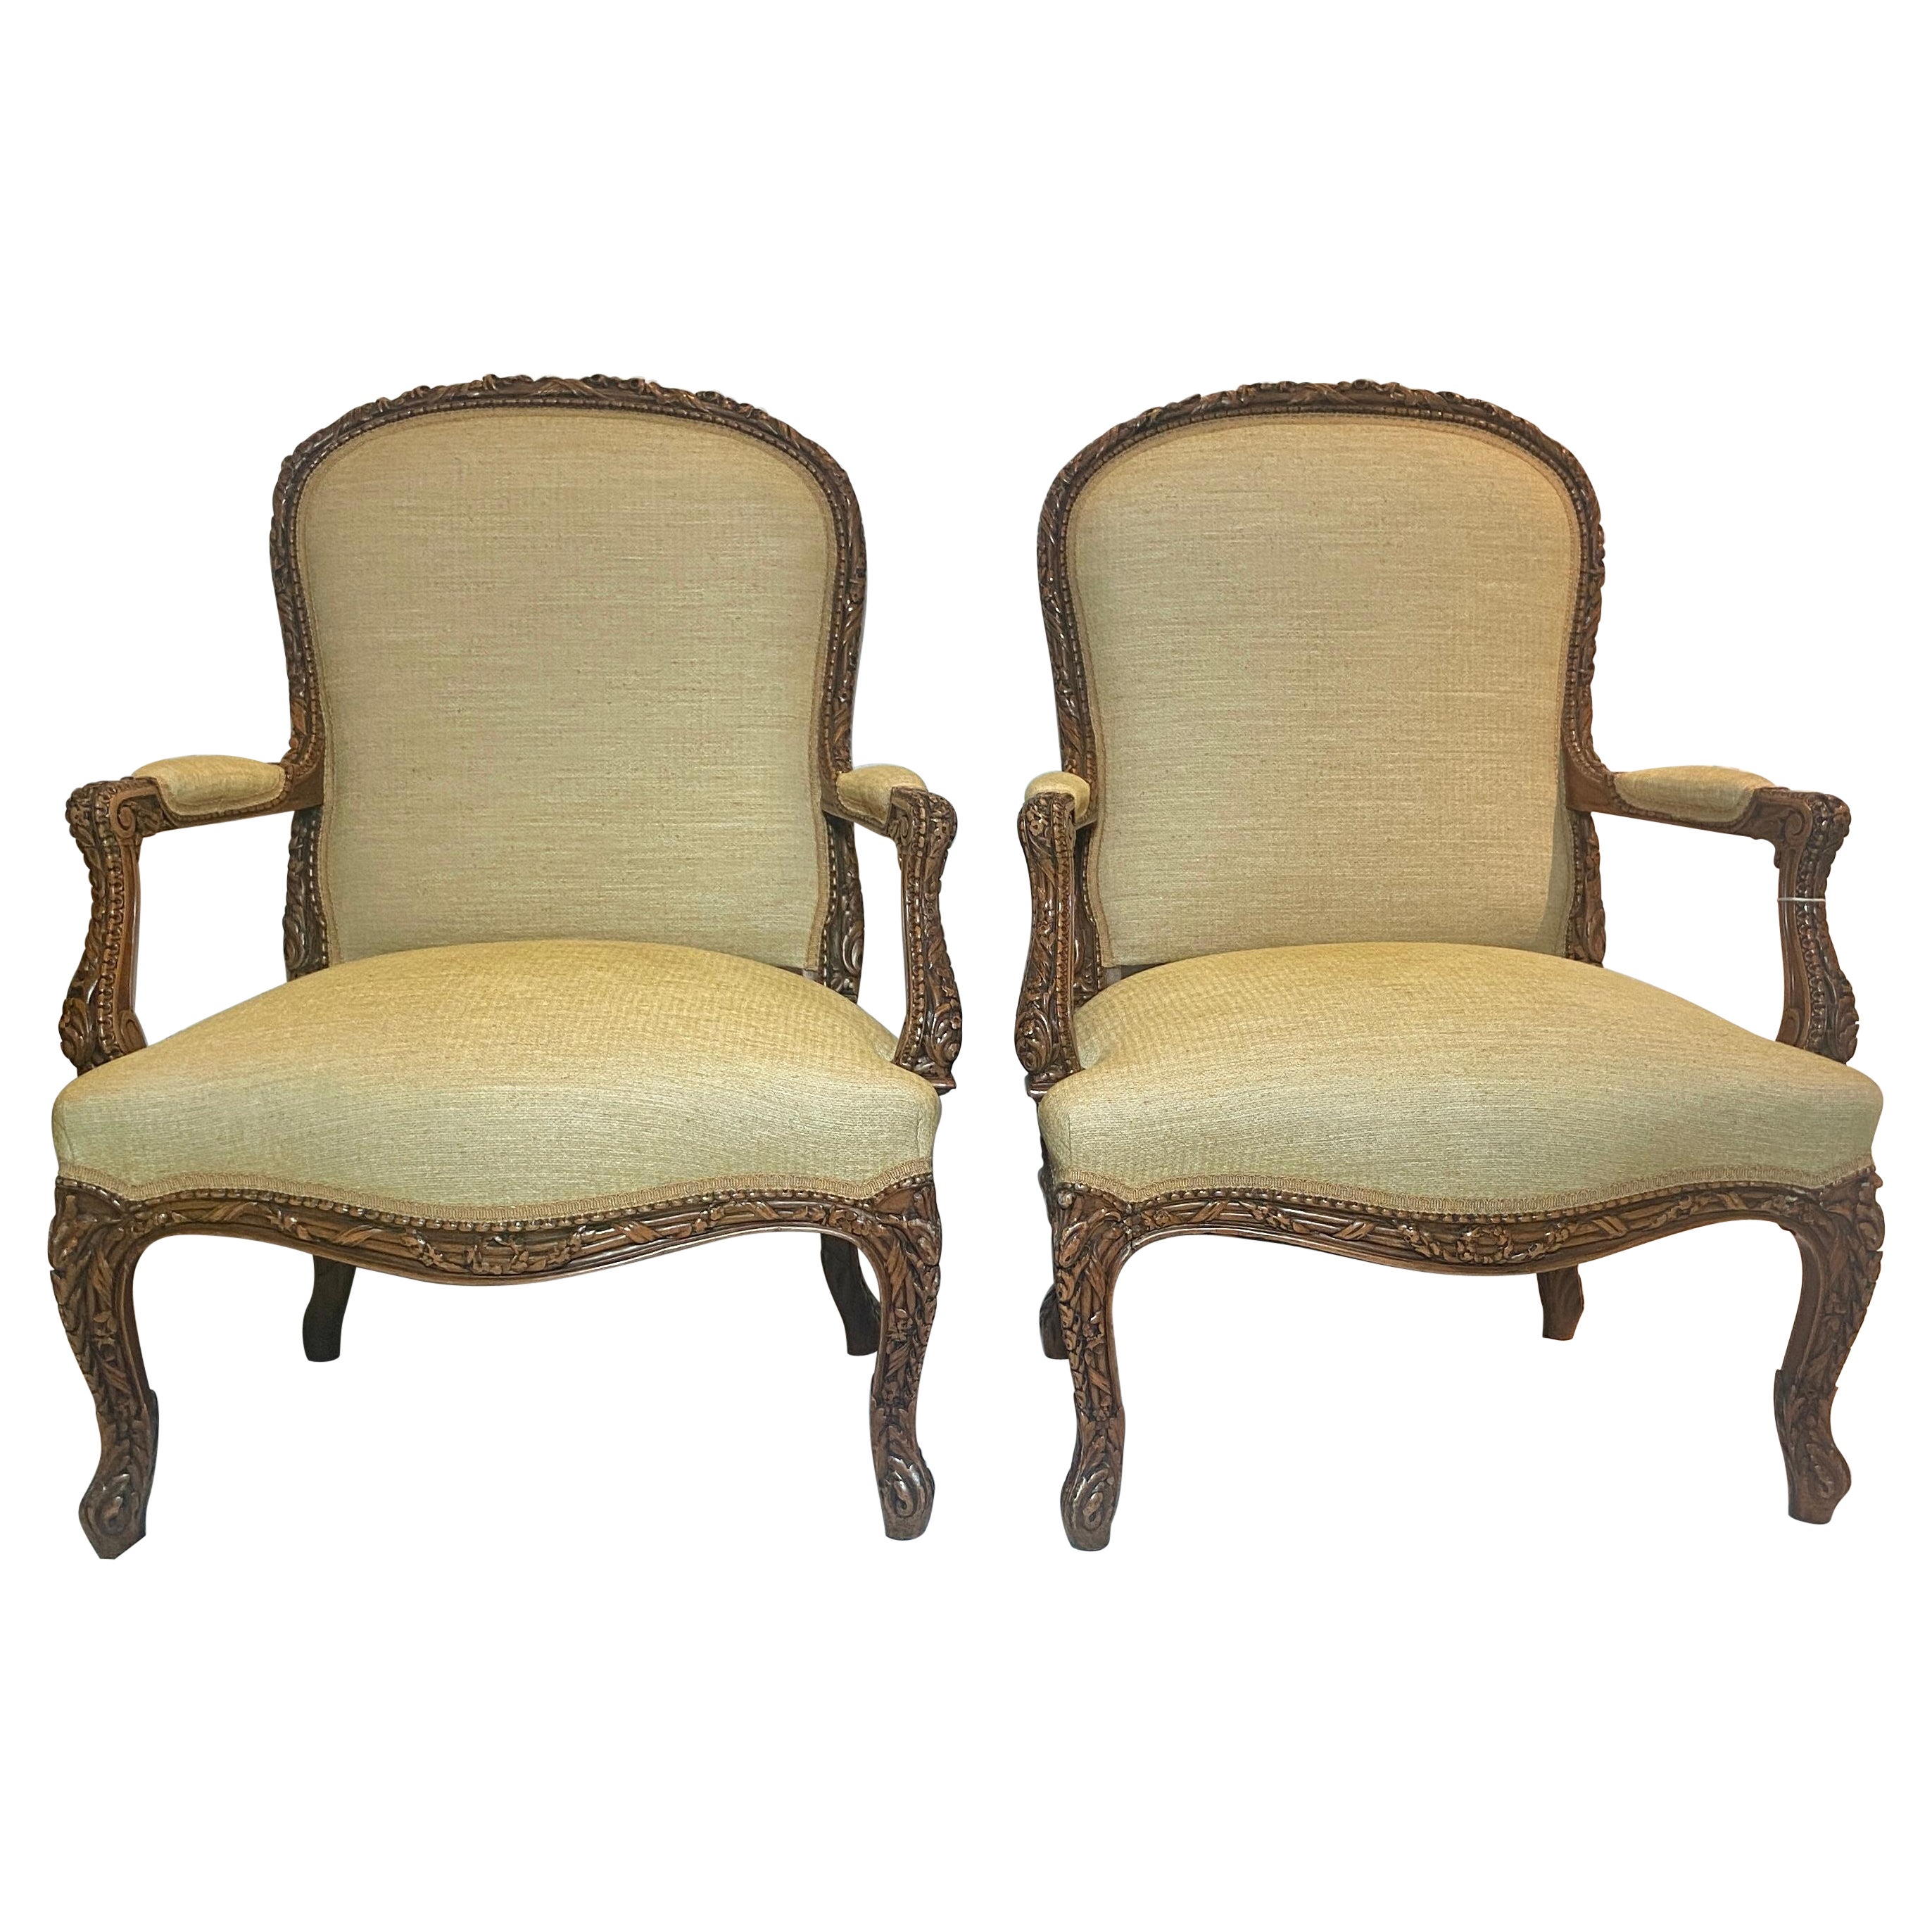 Paire de fauteuils français anciens du 19ème siècle sculptés, tapisserie jaune, vers 1890